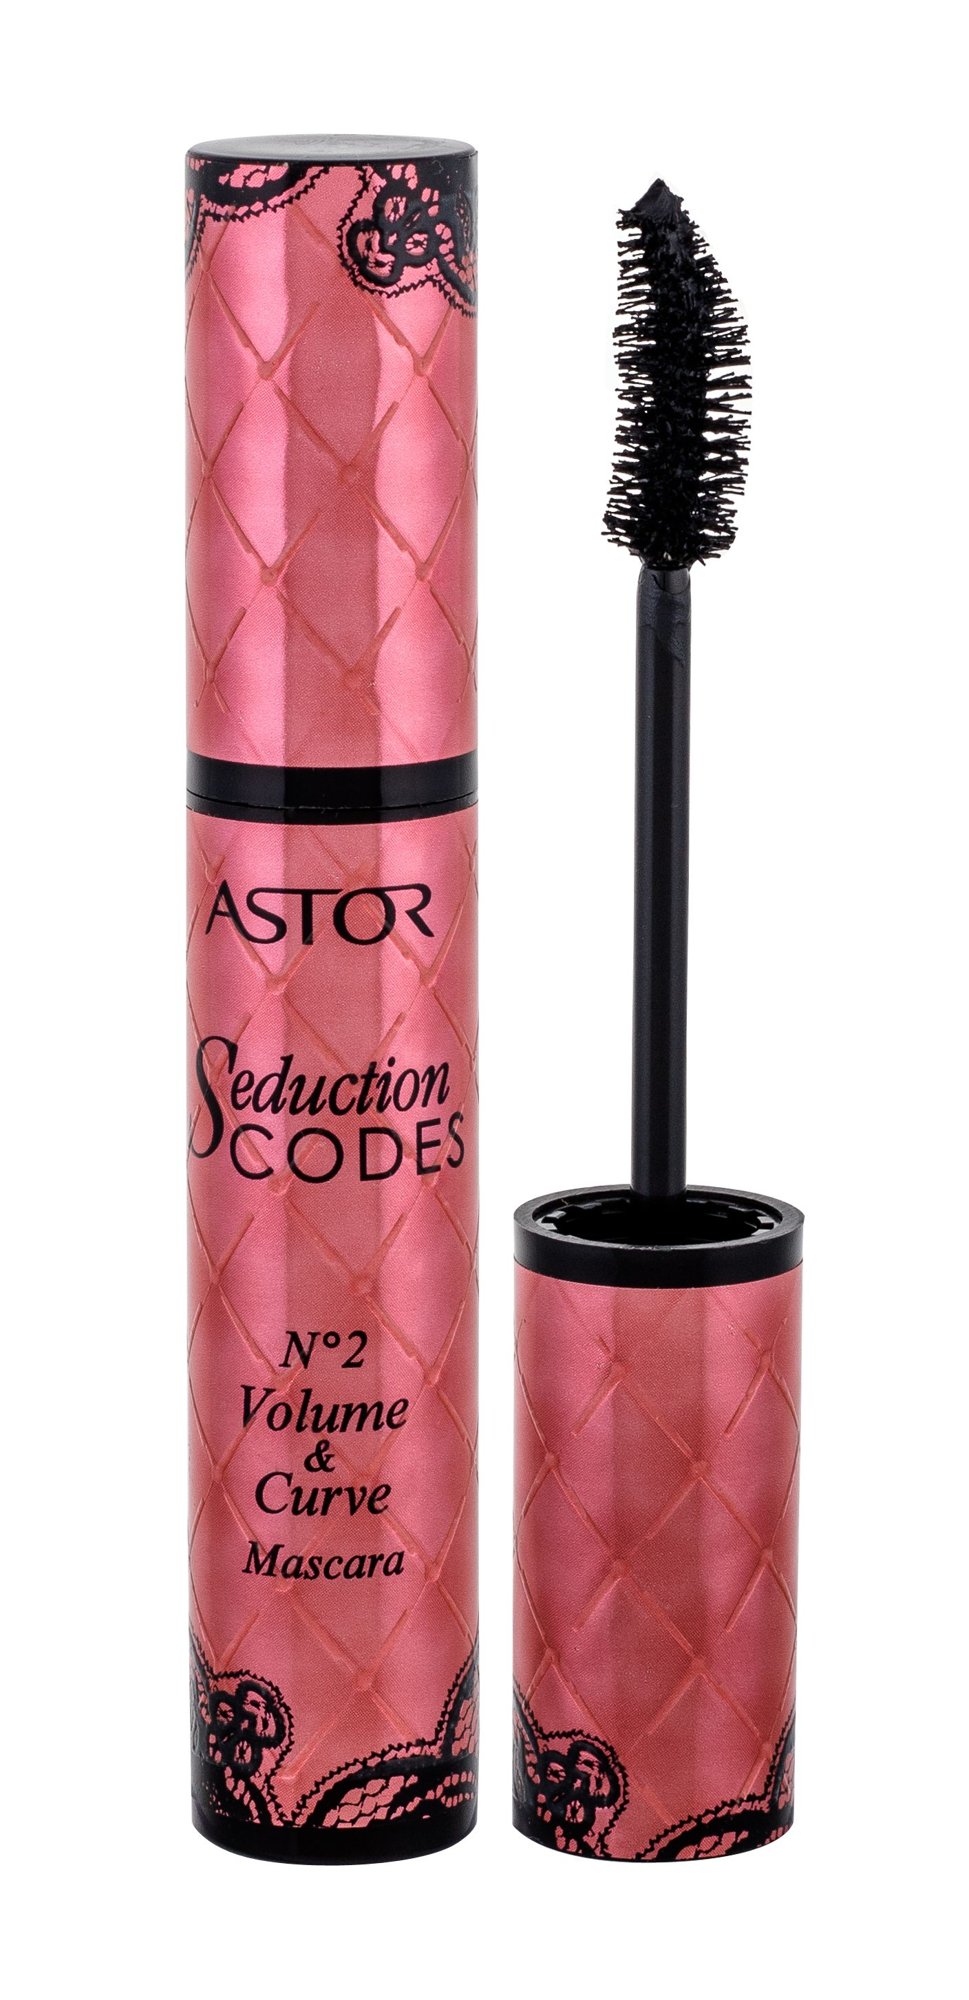 Astor Seduction Codes No2 Volume & Curve blakstienų tušas